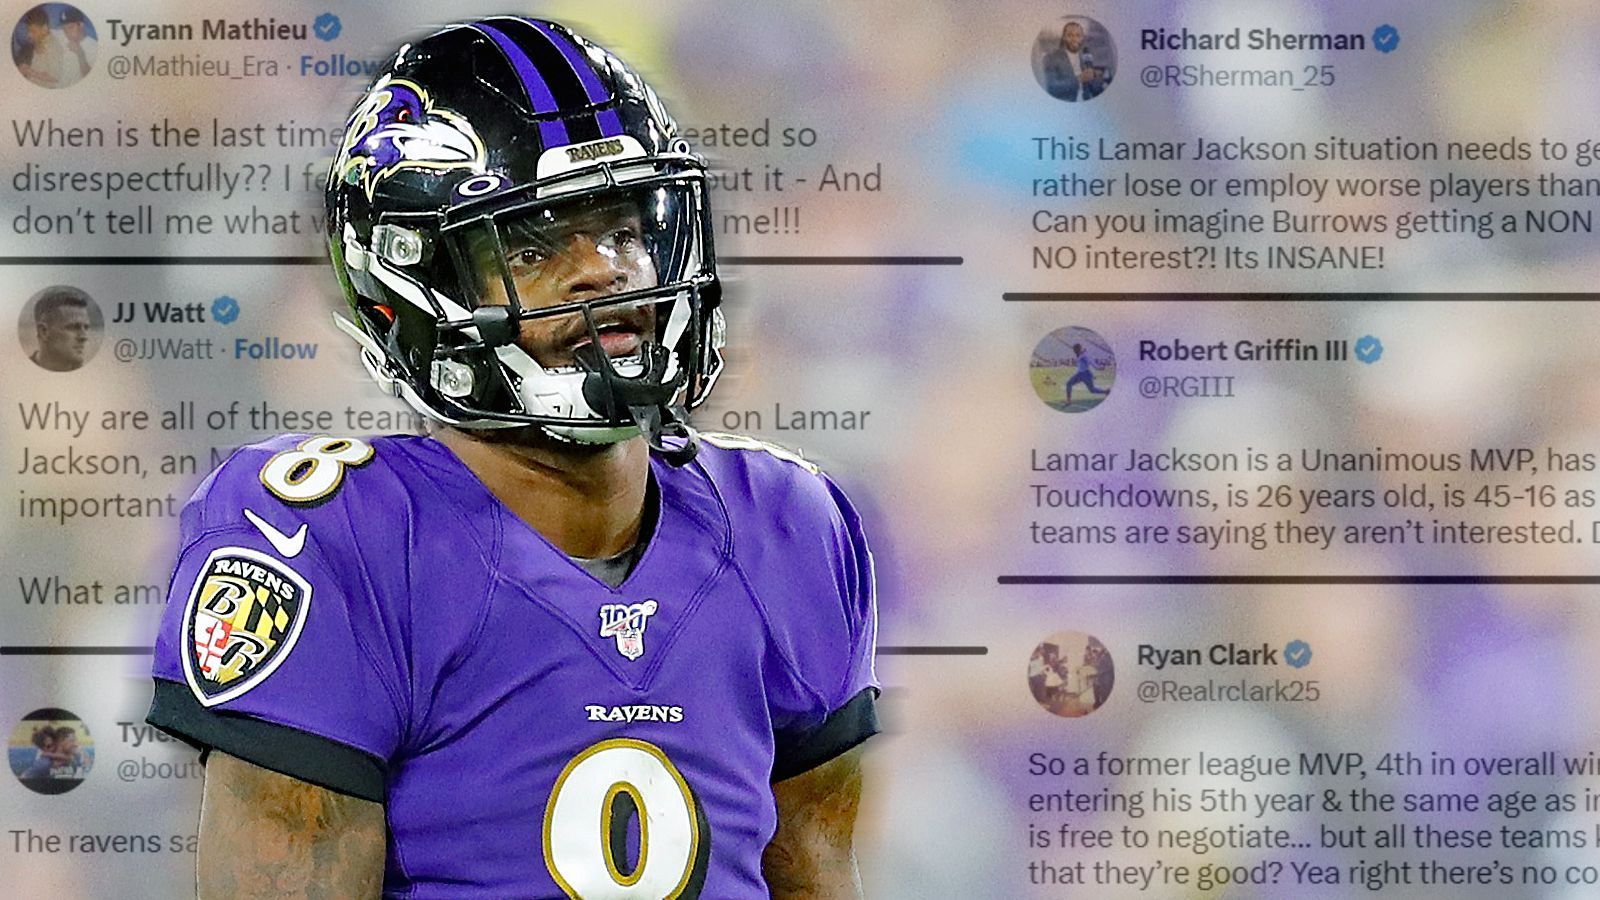 <strong>NFL-Stars reagieren auf Situation von Lamar Jackson</strong><br>
                Die Baltimore Ravens haben den "non-exclusive Franchise Tag" auf Lamar Jackson platziert. Bedeutet, dass dieser für 32,41 Millionen US-Dollar ein weiteres Jahr bleibt. Jedoch haben andere Teams die Möglichkeit mit dem NFL-MVP aus 2019 zu verhandeln und ein besseres Angebot zu unterbreiten. Sollte dies passieren, haben die Ravens die Chance, das Angebot auszugleichen. Wenn sie das nicht machen, bekommen sie von dem neuen Team zwei First-Round-Picks und Jackson wechselt. Da einige den Quarterback als einen der besten Spieler sehen und die Top-QBs zwischen 45 und 50 Millionen Dollar im Jahr kassieren, wundert es, dass jetzt bereits fünf Teams Jackson eine Absage erteilt haben. Beziehungsweise Desinteresse. Darunter die Atlanta&nbsp;Falcons, Washington Commanders, Carolina Panthers, Miami Dolphins und Las Vegas Raiders. Einige NFL-Experten und Spieler stößt dieser Verlauf sauer auf. So lassen sie im Netz ihren Unmut freien Lauf. So postet ...
